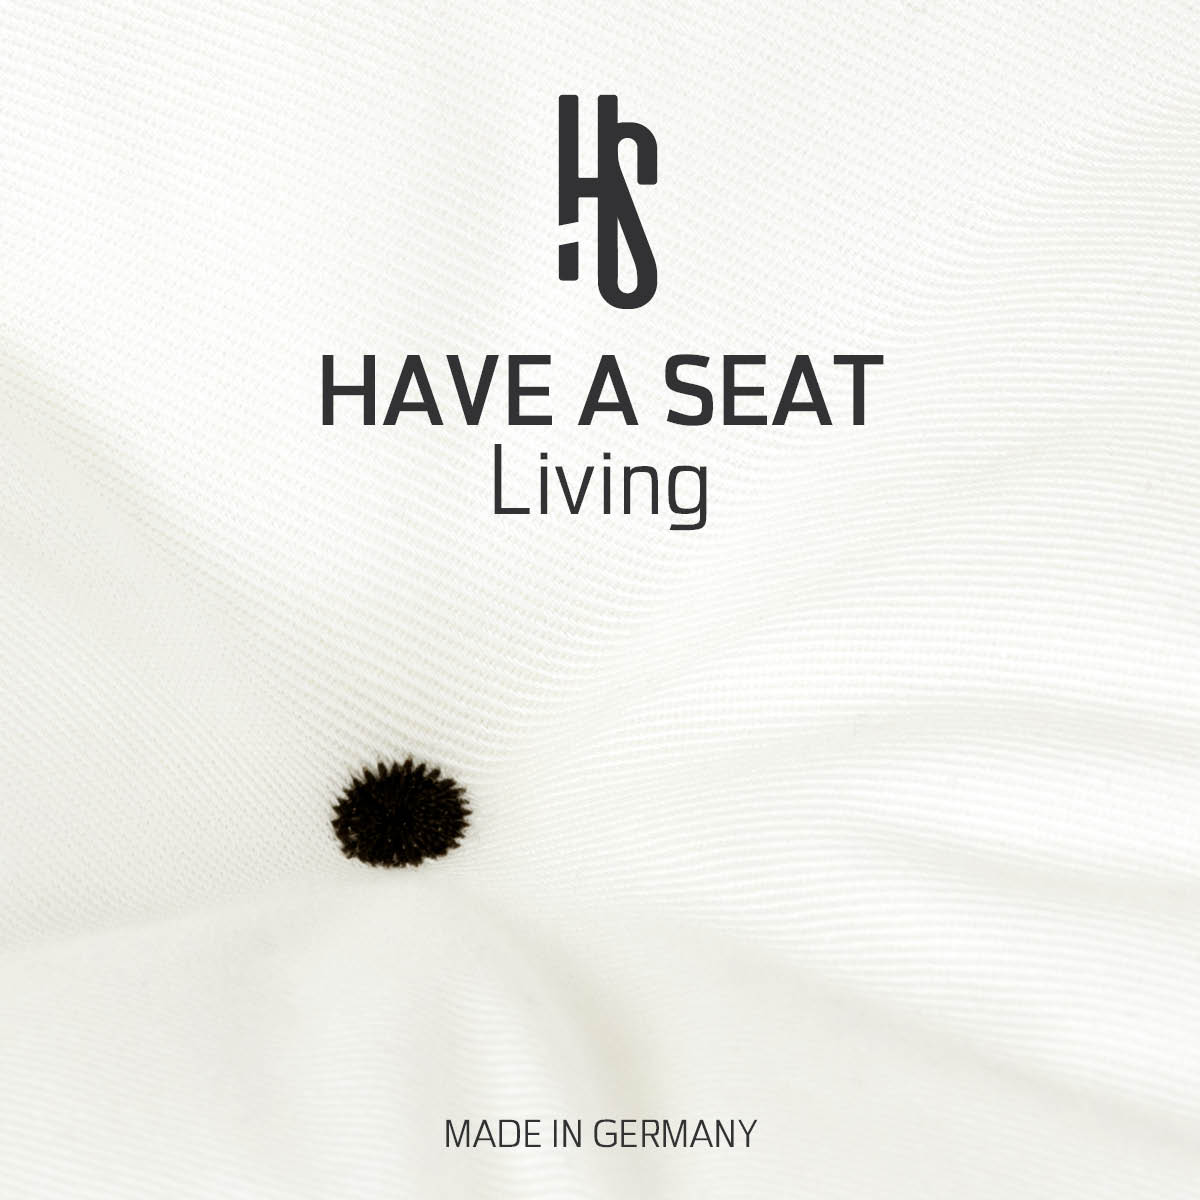 Sitzpolster Auflage weiss für Sitzbank aus hautfreundlichem, strapazierfähigem Baumwollmischgewebe | HAVE A SEAT Living - Made in Germany